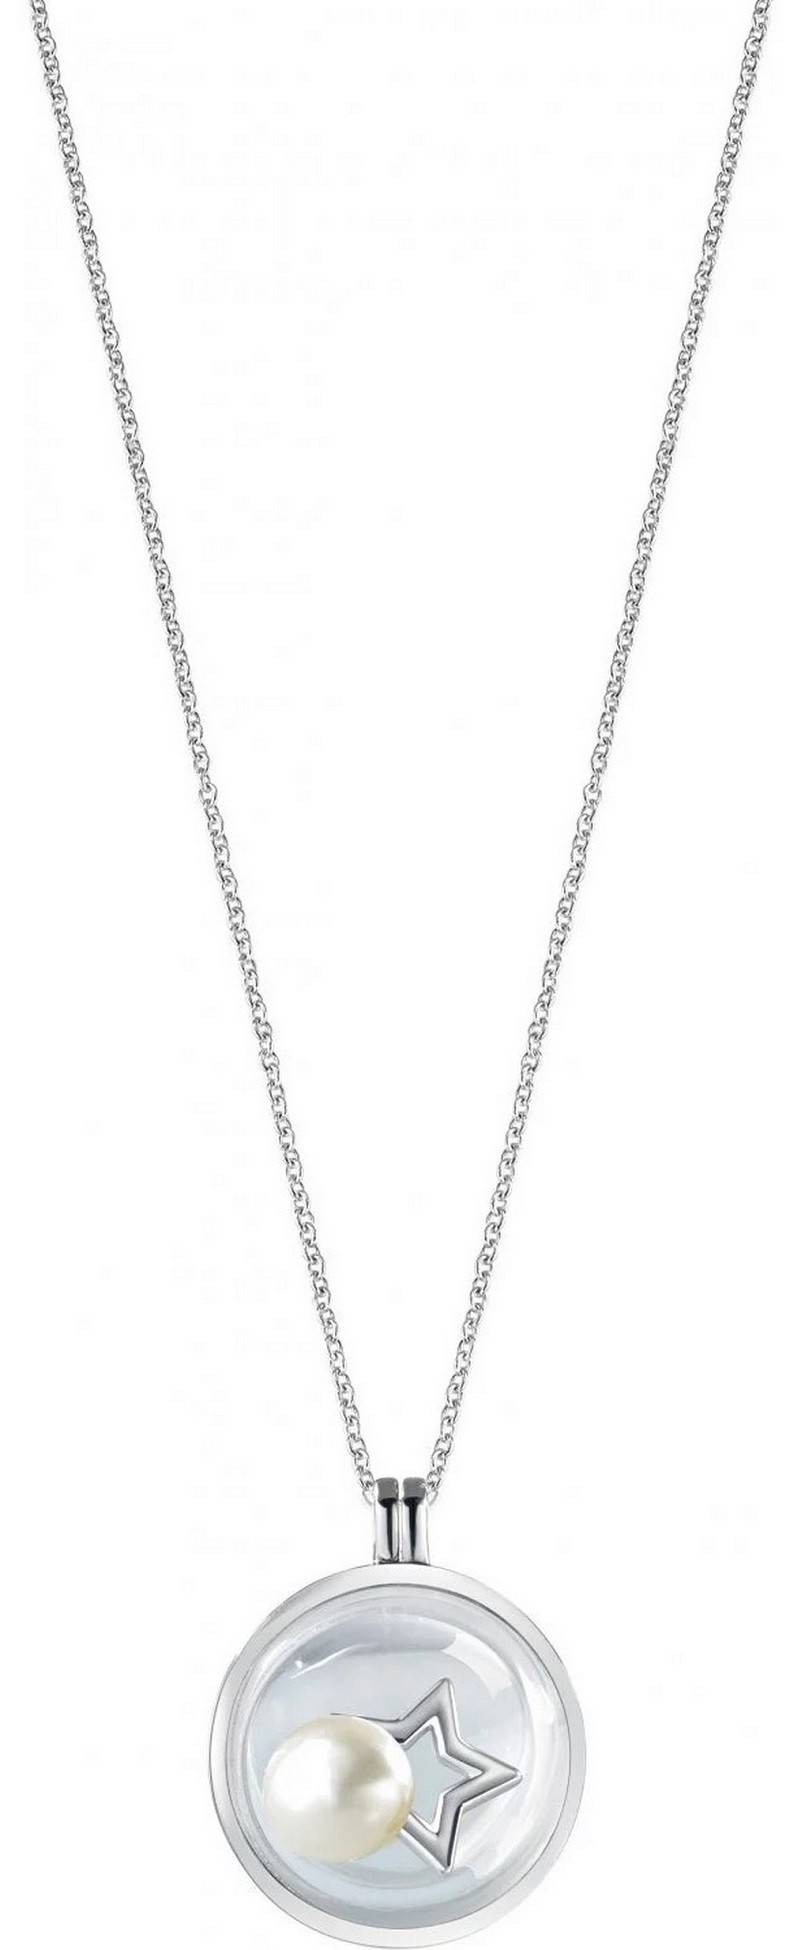 Morellato Scrigno D'Amore Rhodium Plated Sterling Silver SAMB01 Women's Necklace